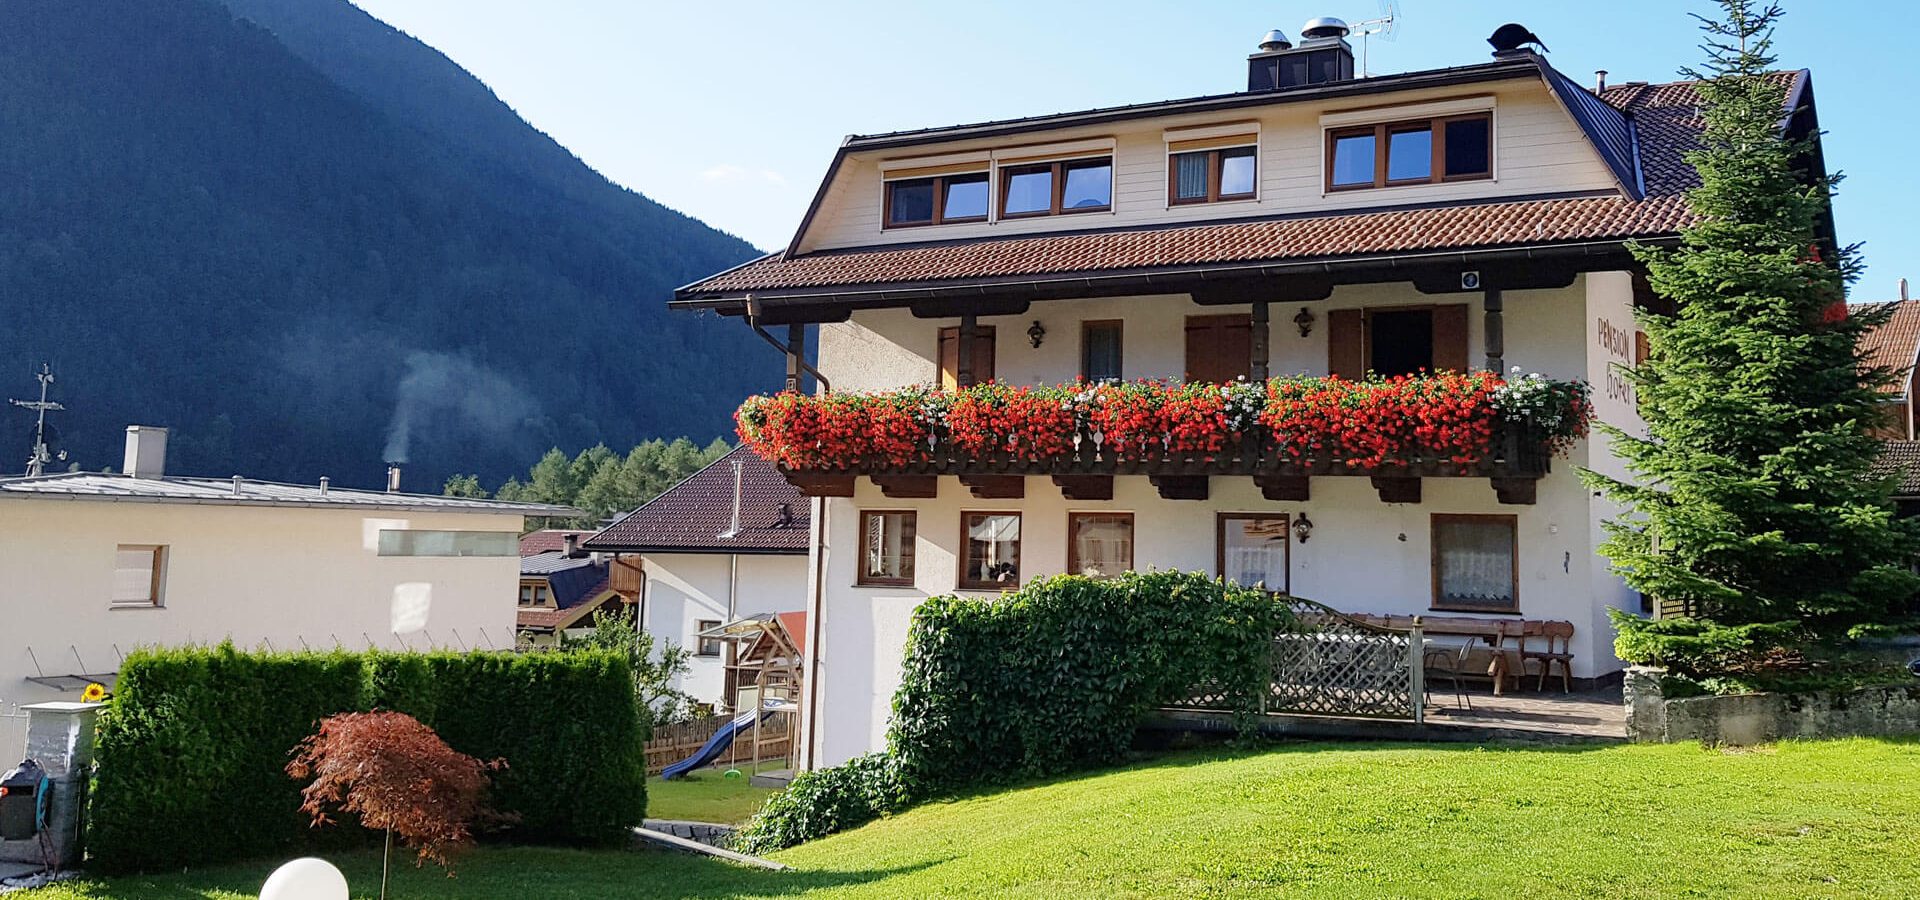 Urlaub in der Pension Hofer*** im Weitental - Vintl / Pustertal - Südtirol